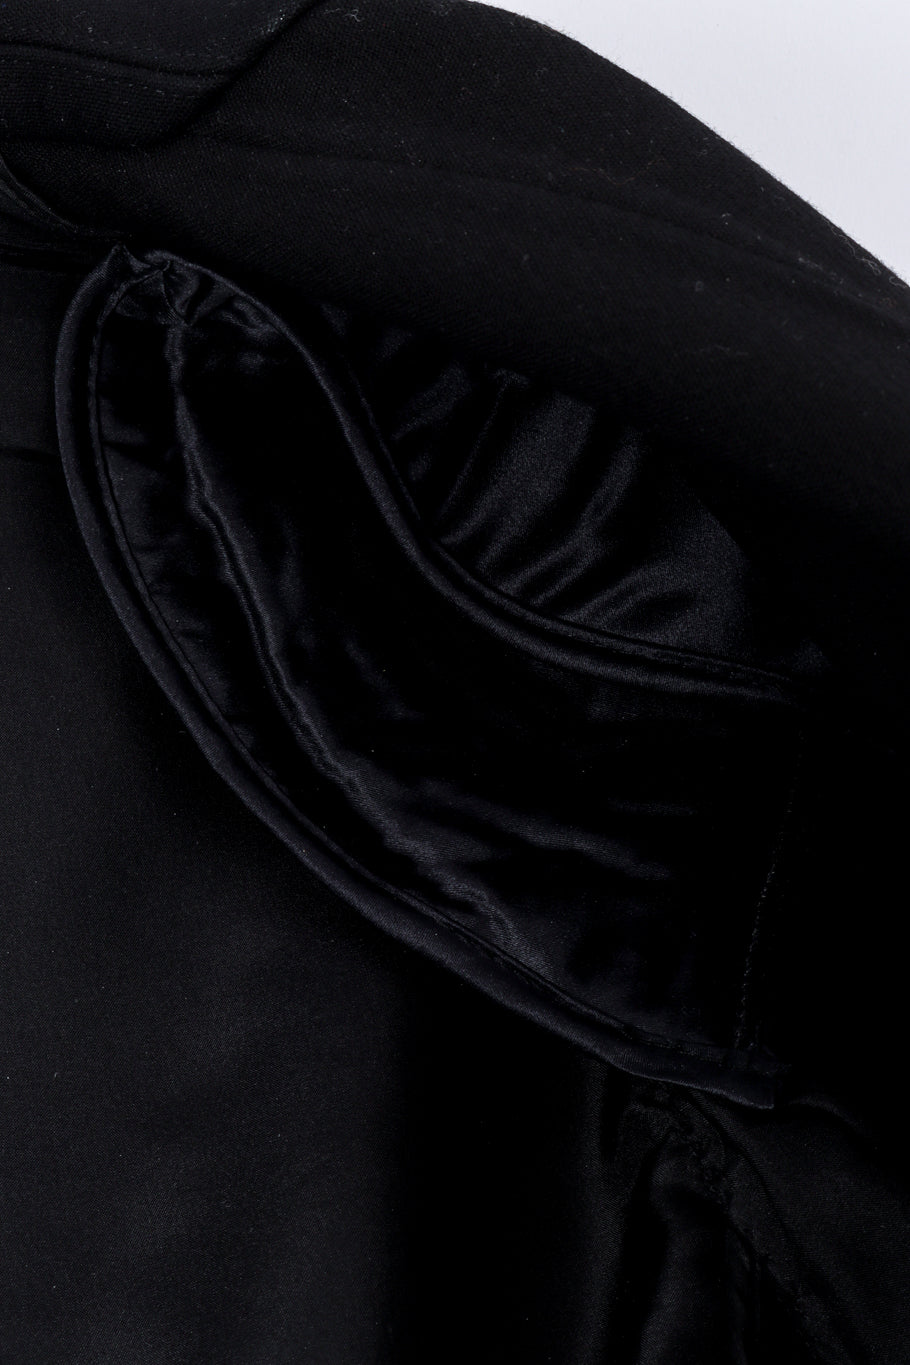 2014 S/S Eyelet Coat by Céline shoulder pads close @recessla